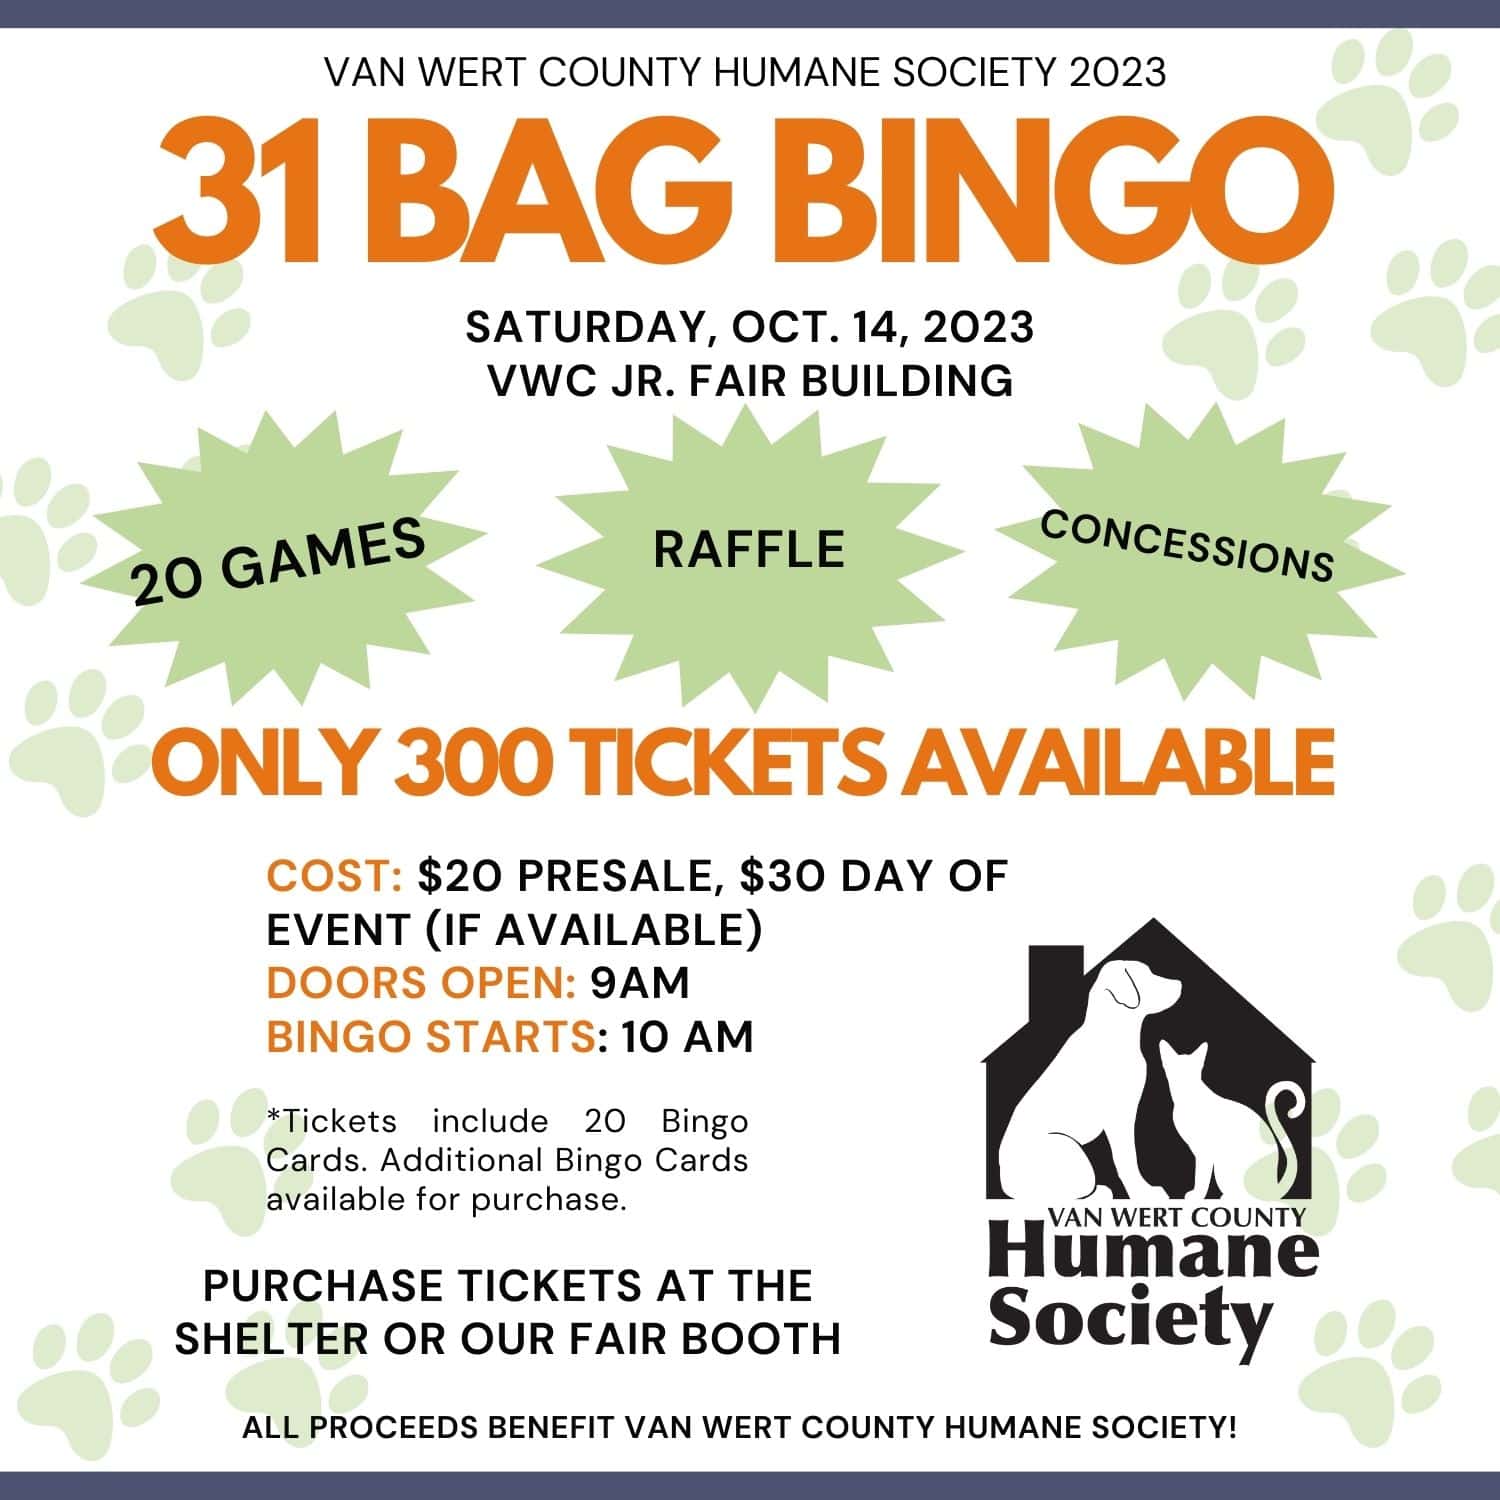 Van Wert County Humane Society 31 Bag Bingo